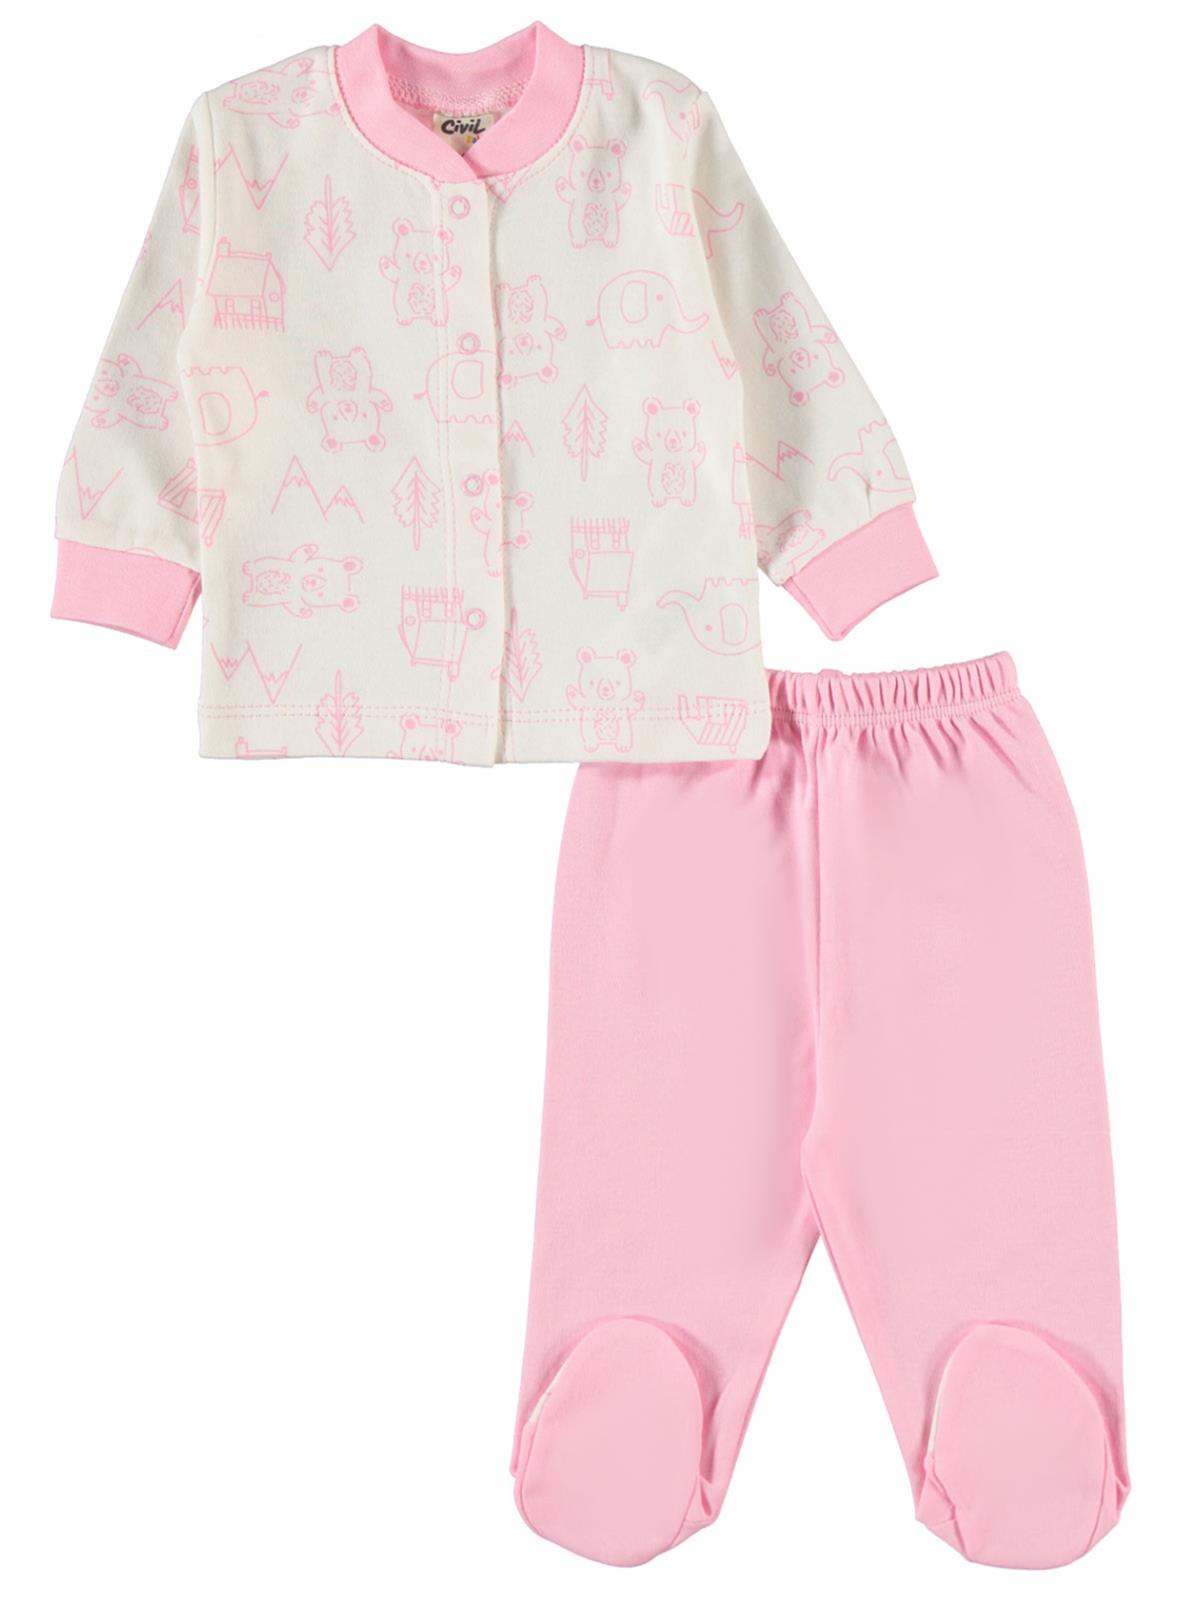 Civil Baby Bebek Pijama Takımı 0-6 Ay Pembe